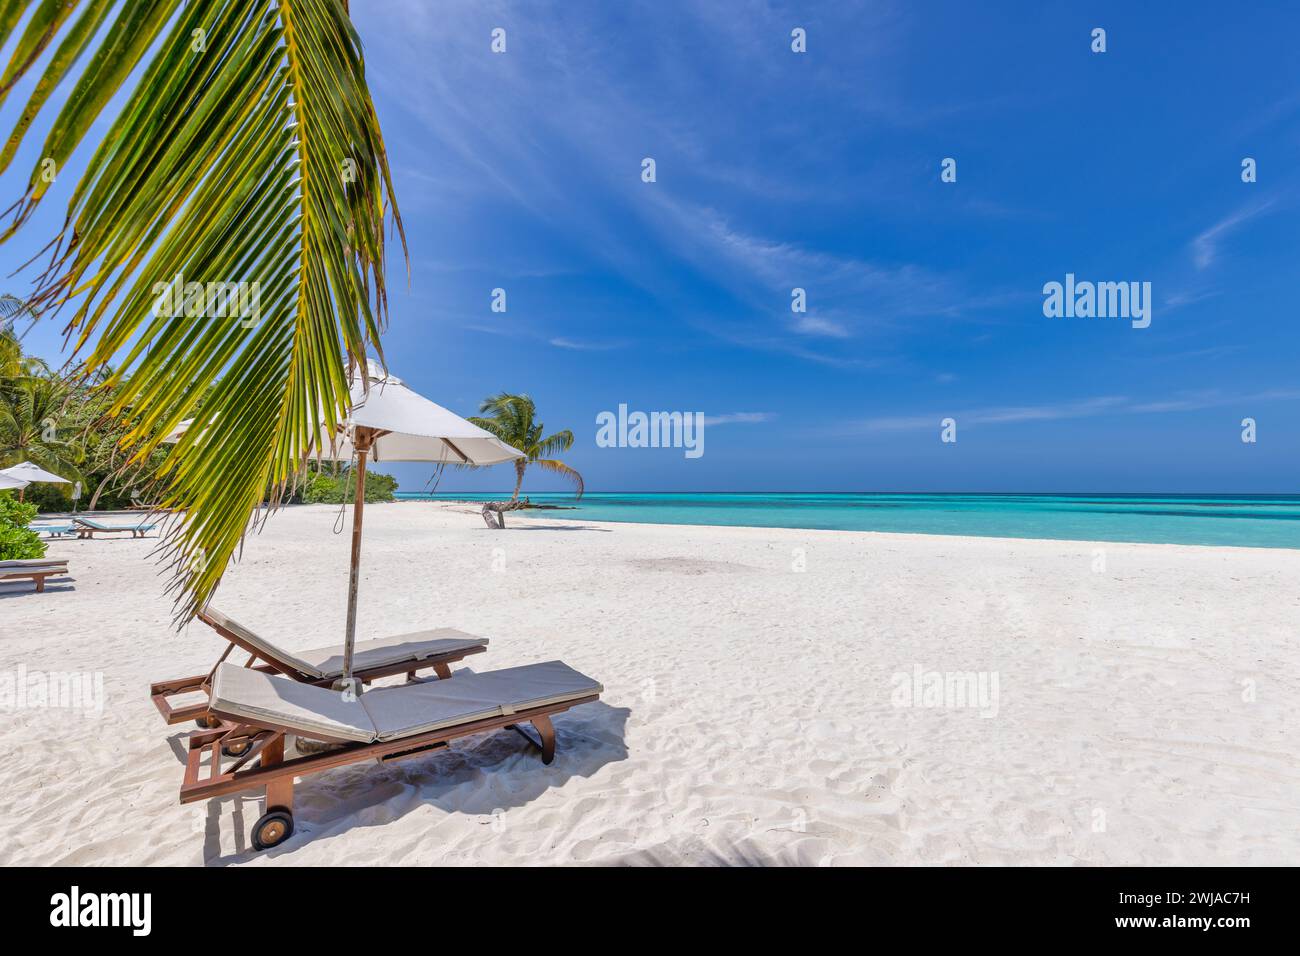 Tropisches Paradies Strand weißer Sand Kokospalmen Reise Tourismus Panorama Hintergrund. Luxusurlaub und Urlaub Flitterwochen, tropischer Liebespaarstrand Stockfoto